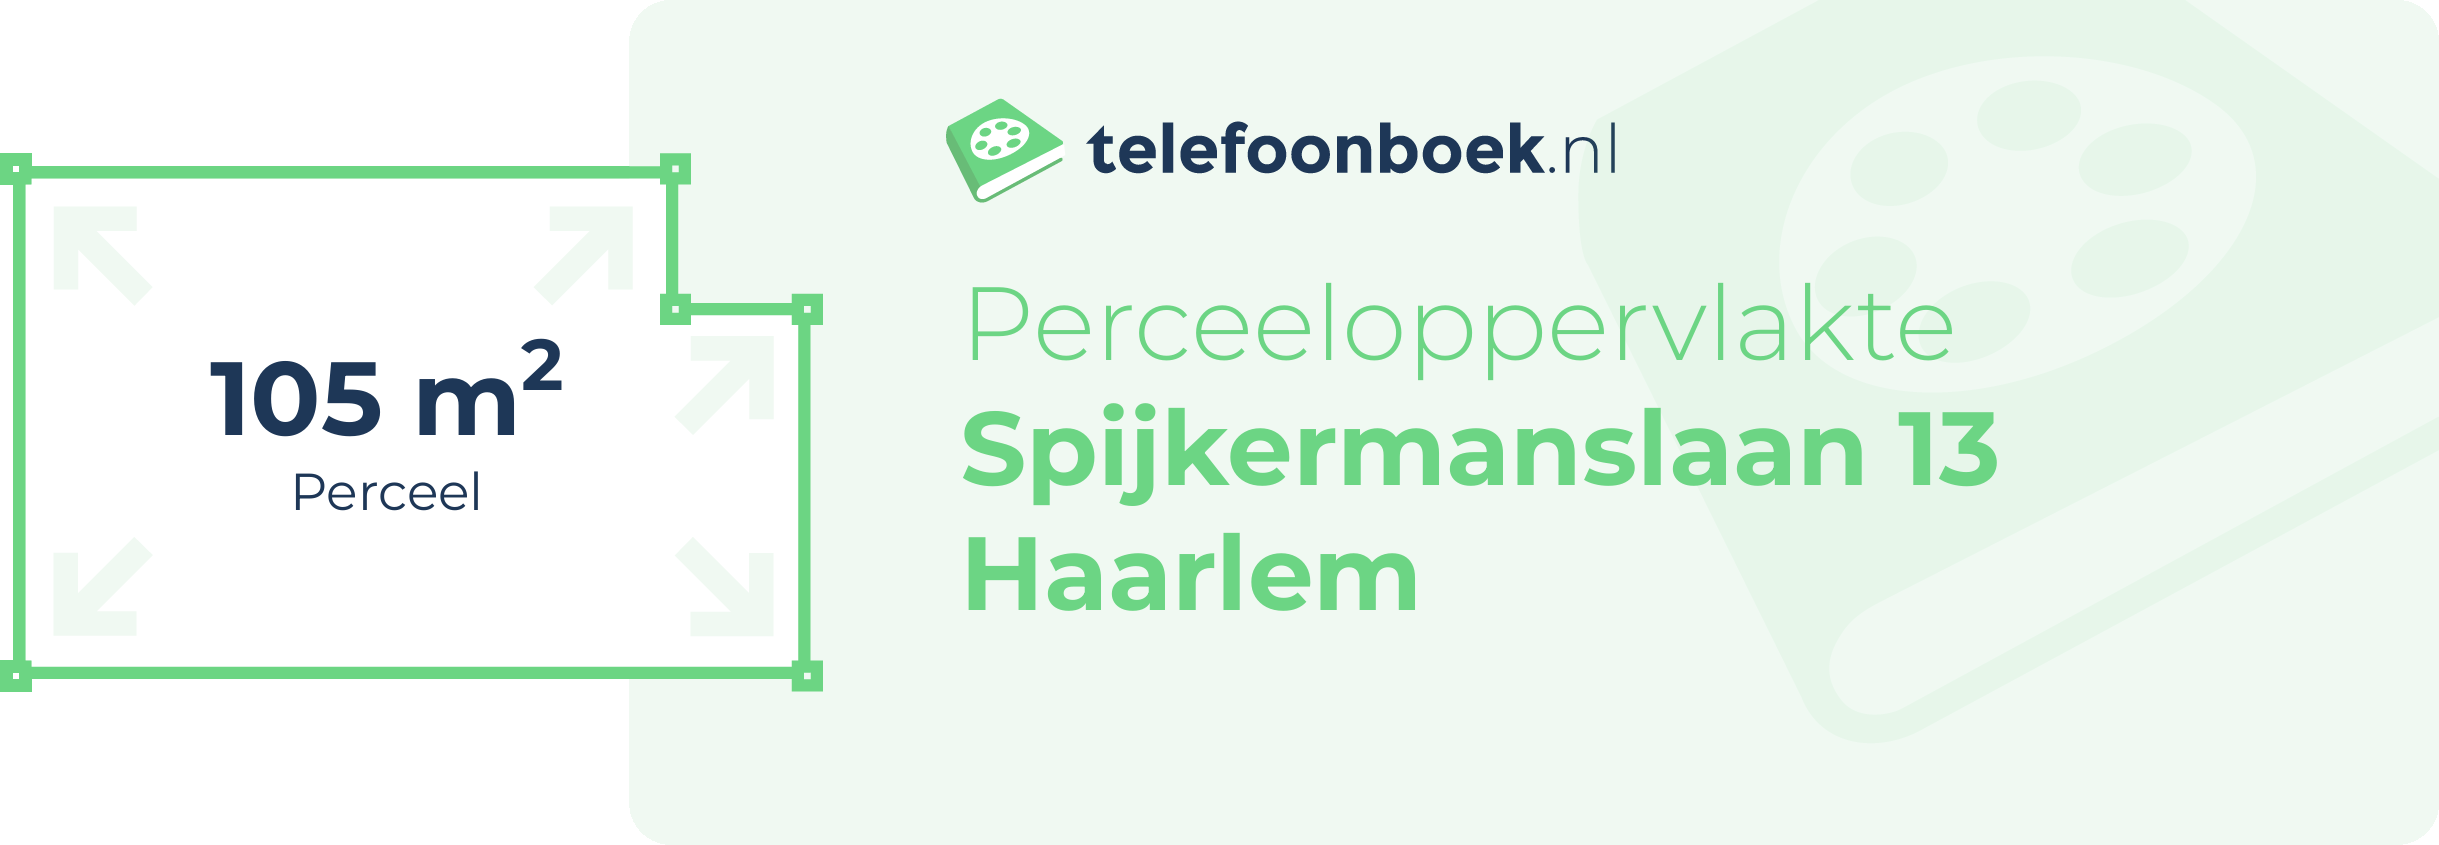 Perceeloppervlakte Spijkermanslaan 13 Haarlem